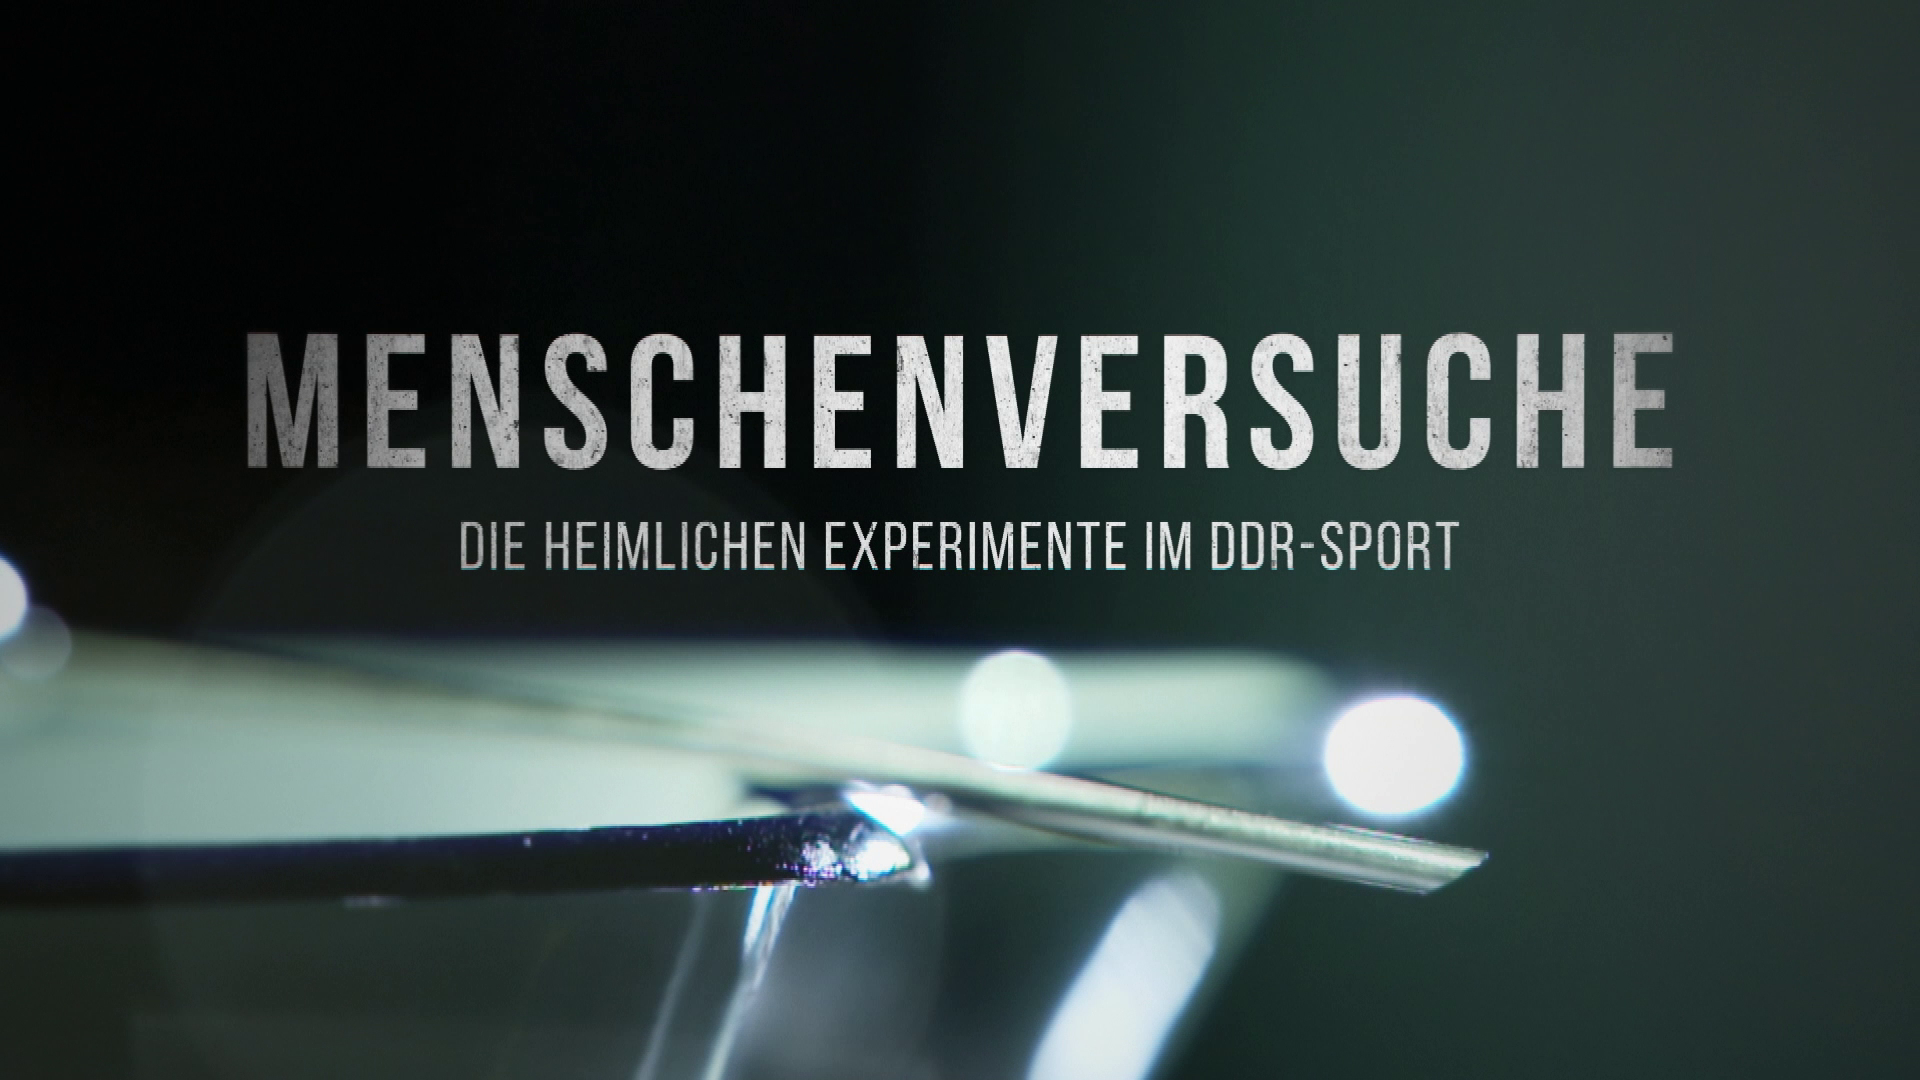 Die heimlichen Experimente im DDR-Sport